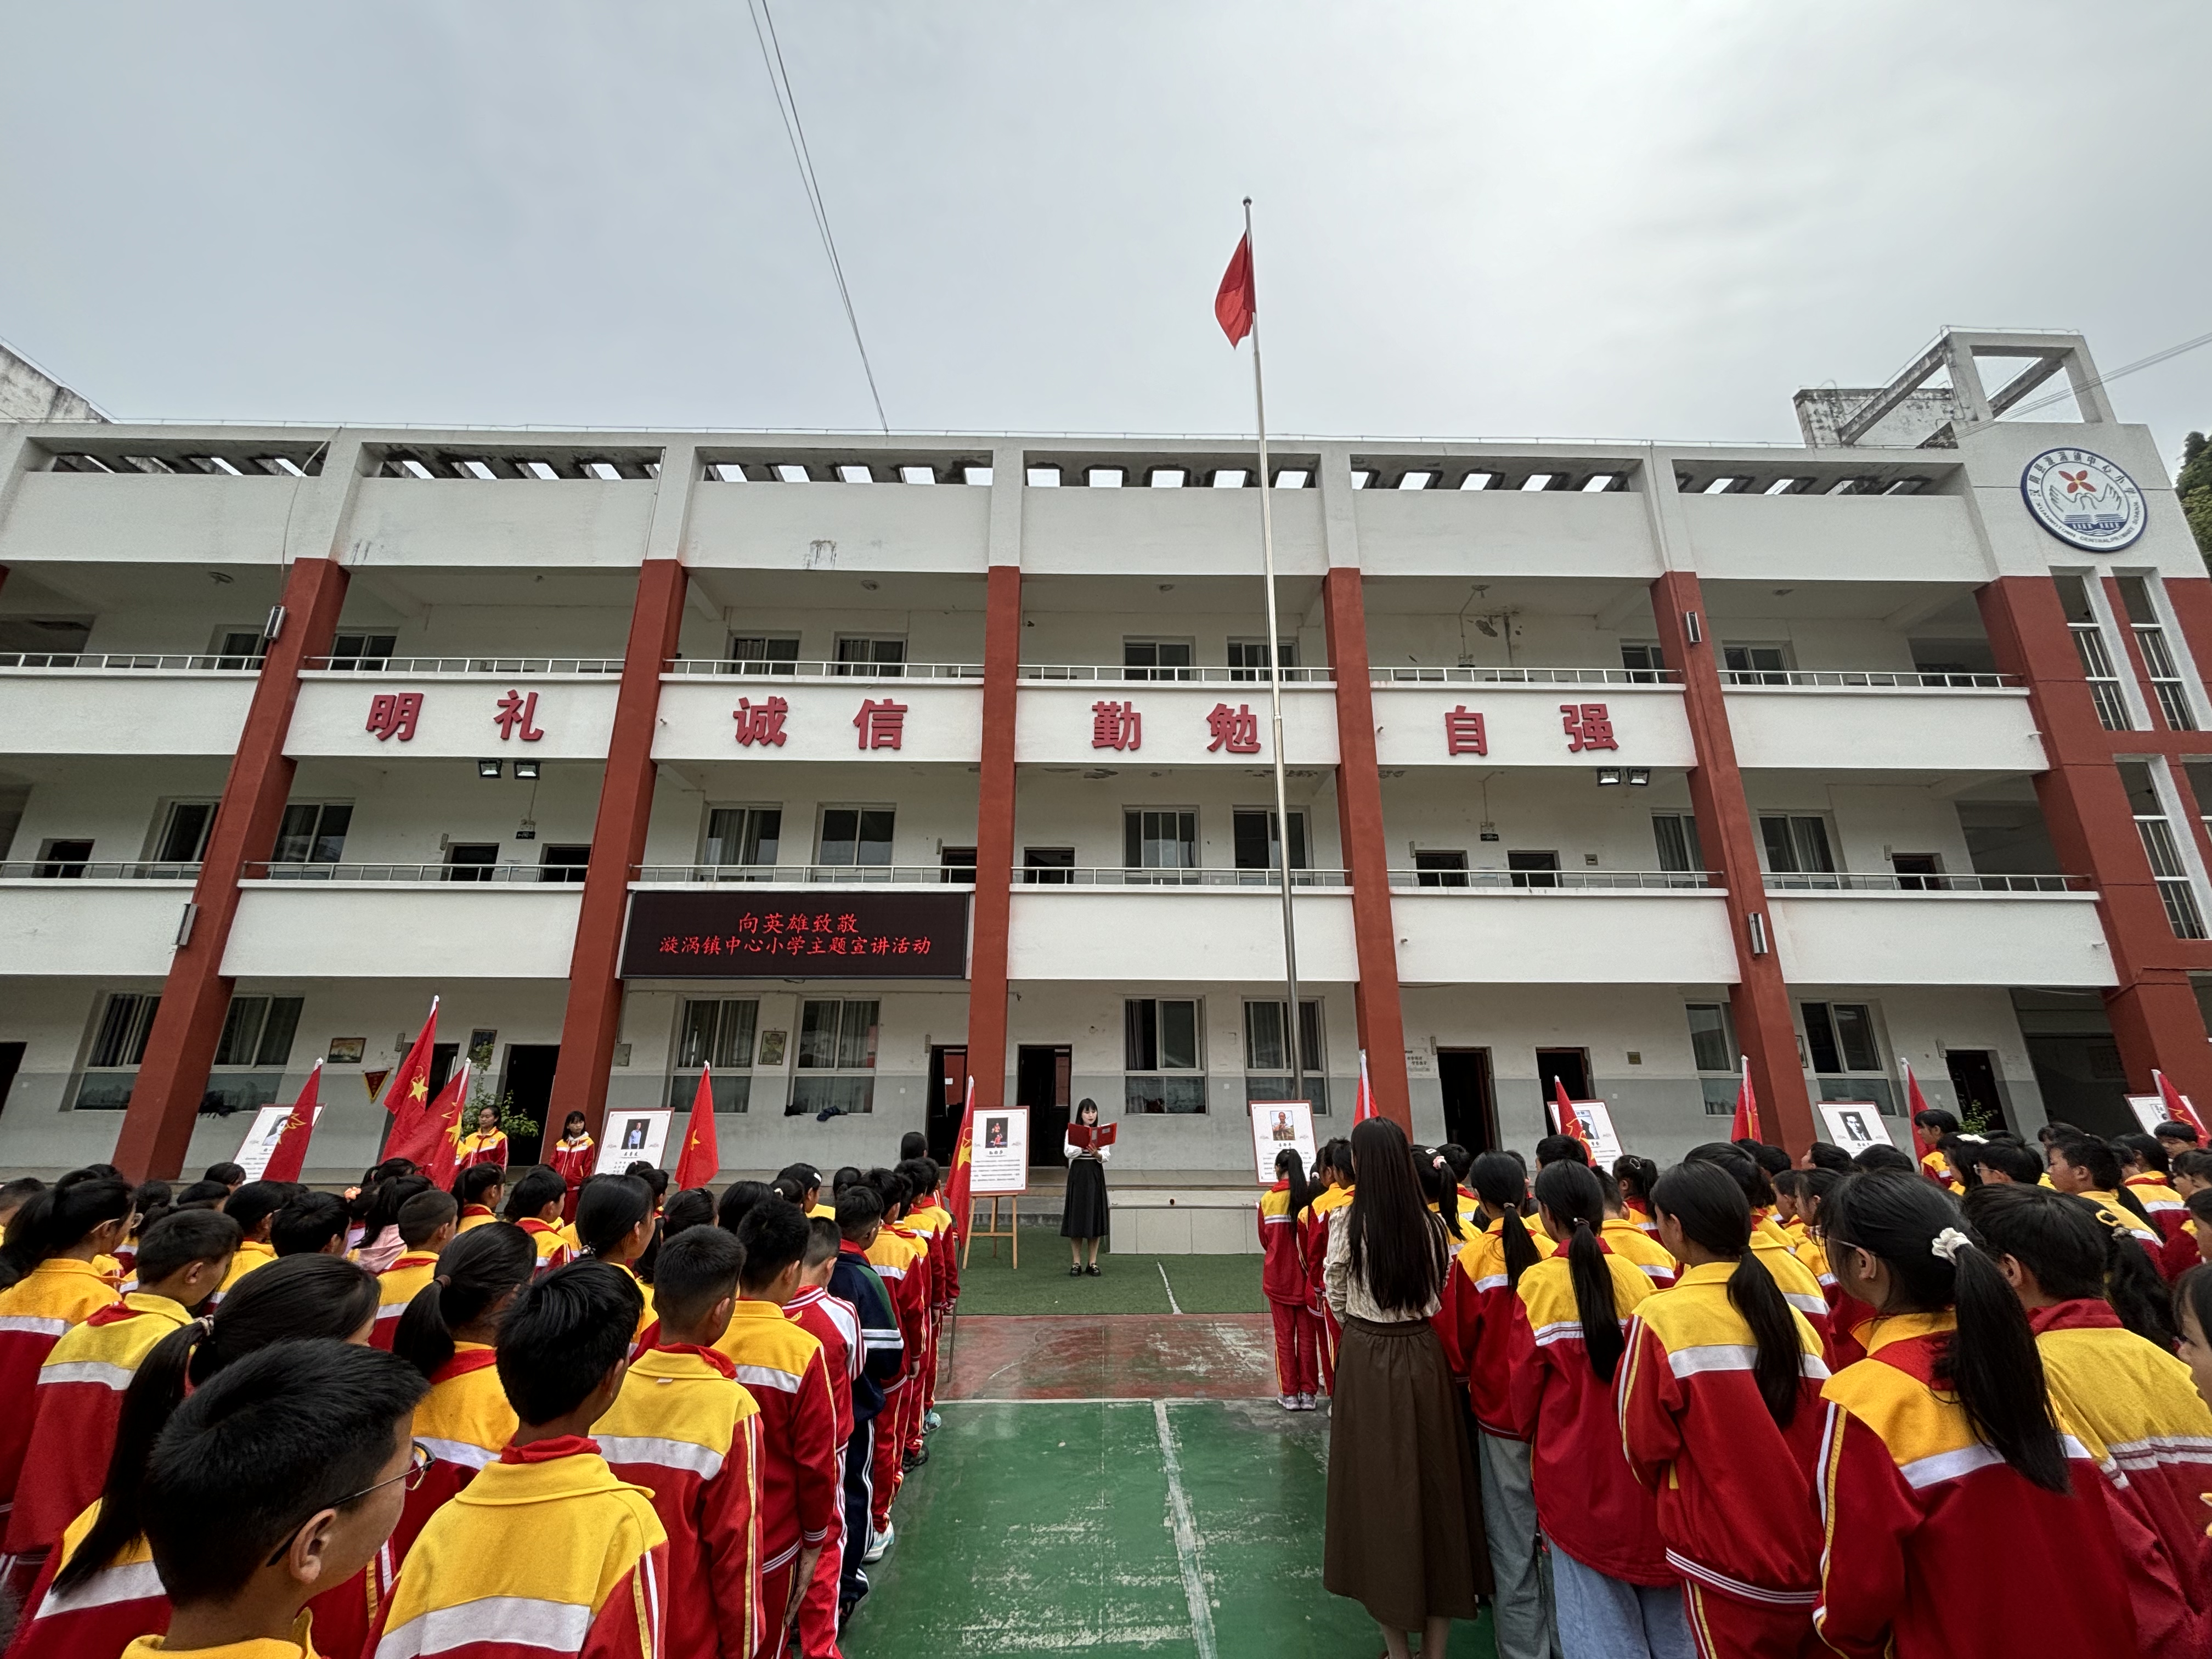 汉阴县漩涡镇中心小学举行“向英雄致敬”主题宣讲活动